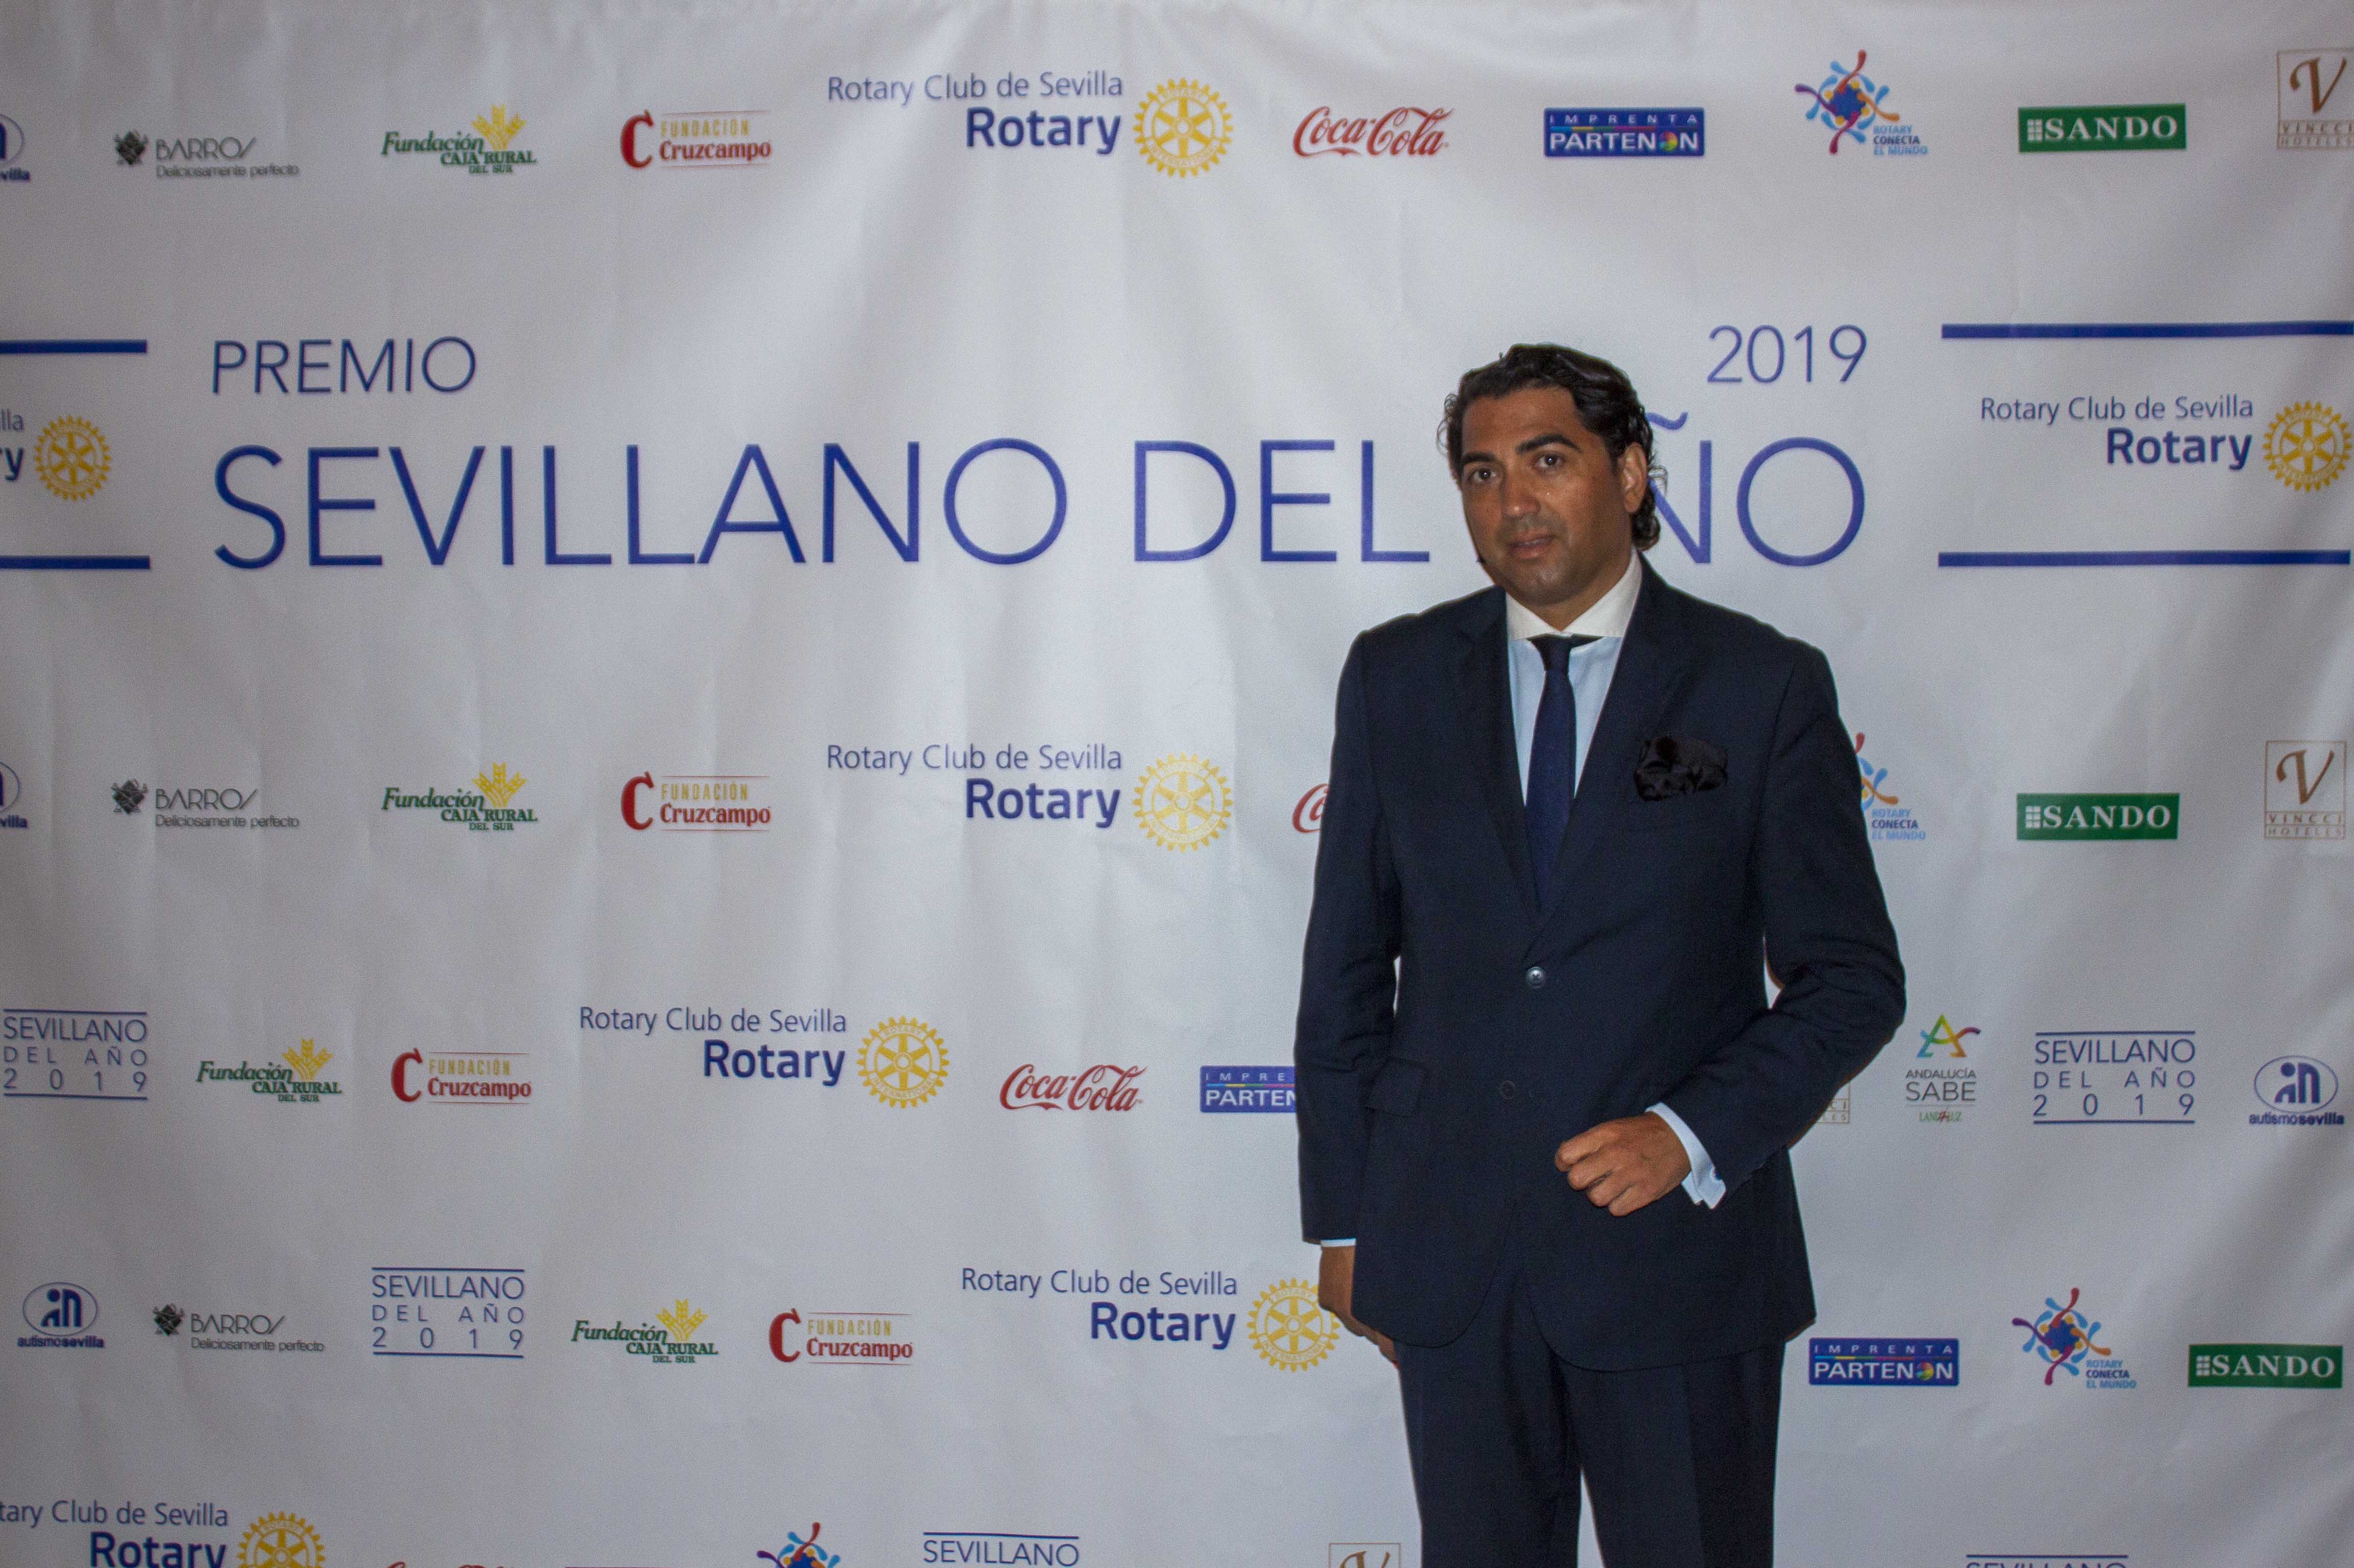 Cena Rotary Club 28-09. Premio al Sevillano del Año que recae en D. Antonio Pulido,presidente de la Fundación Cajasol